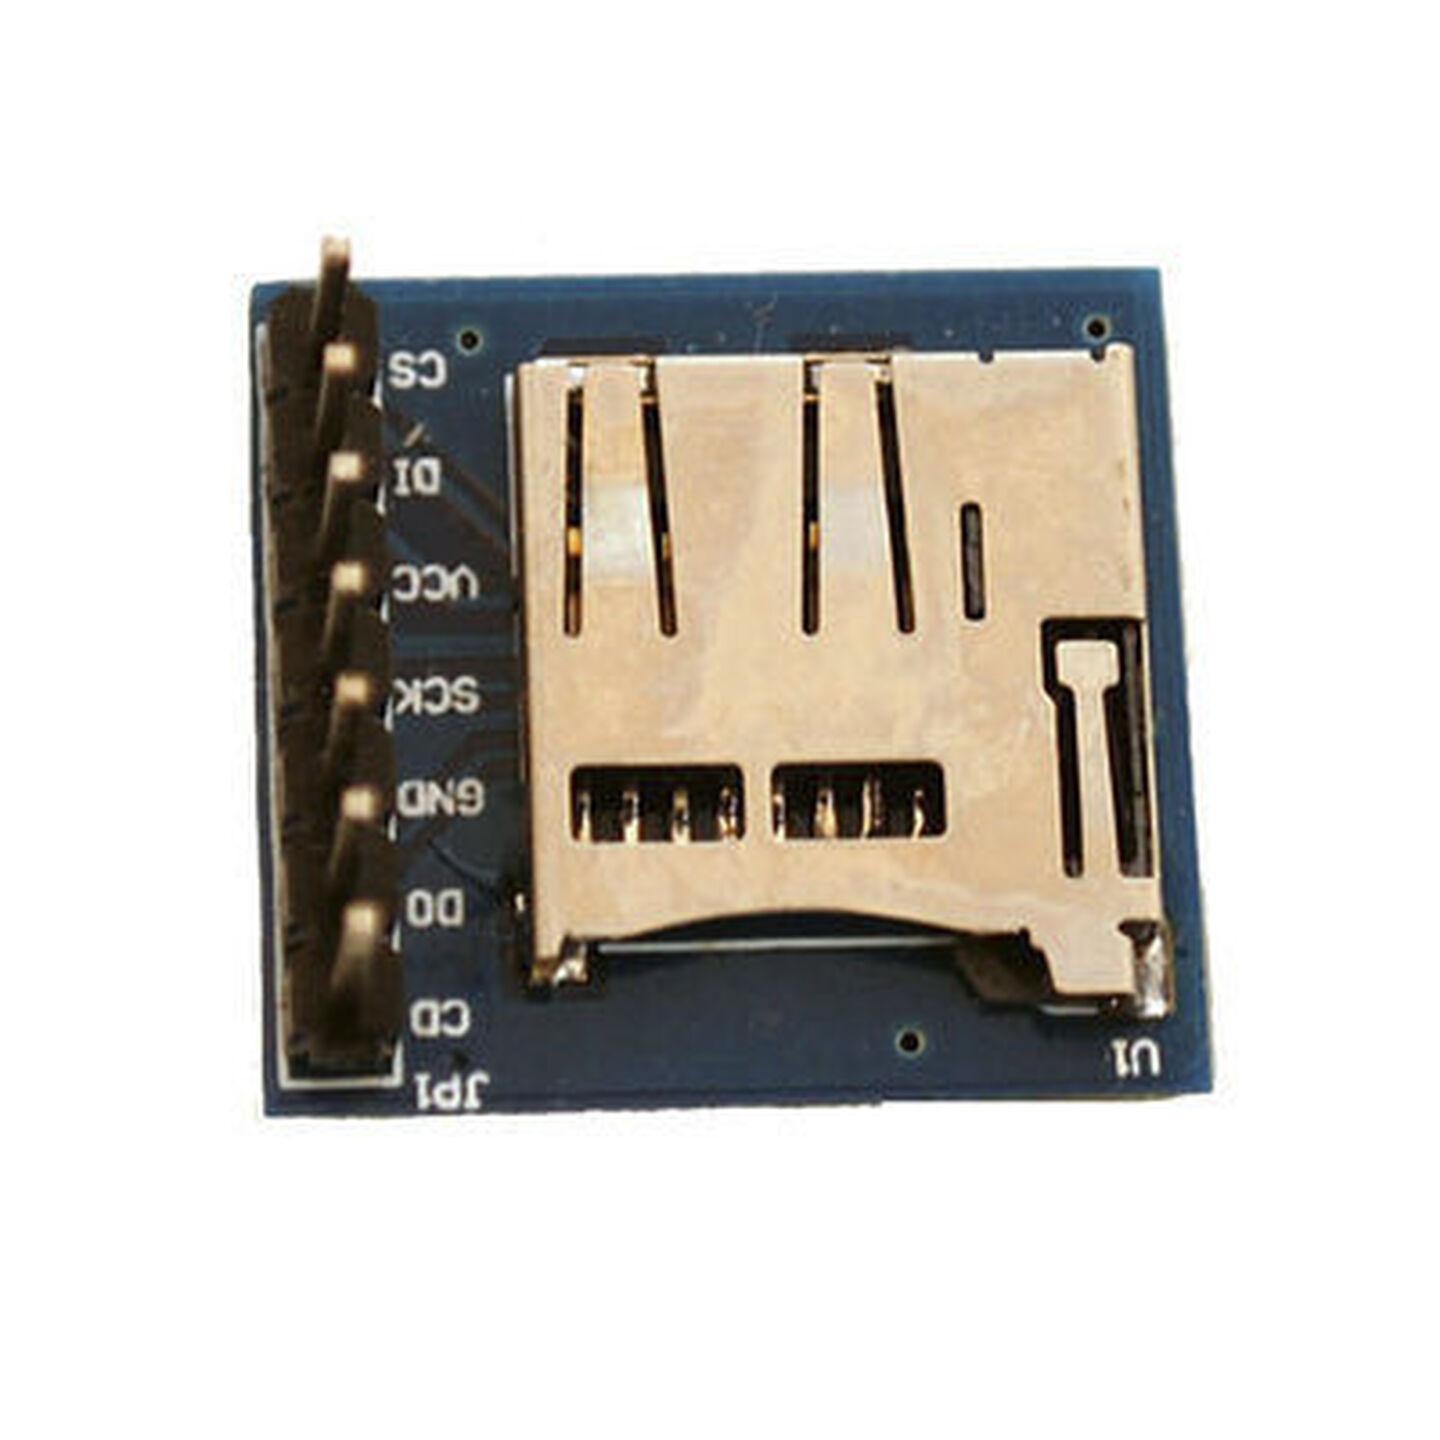 microSD Transflash Breakout Board for Arduino